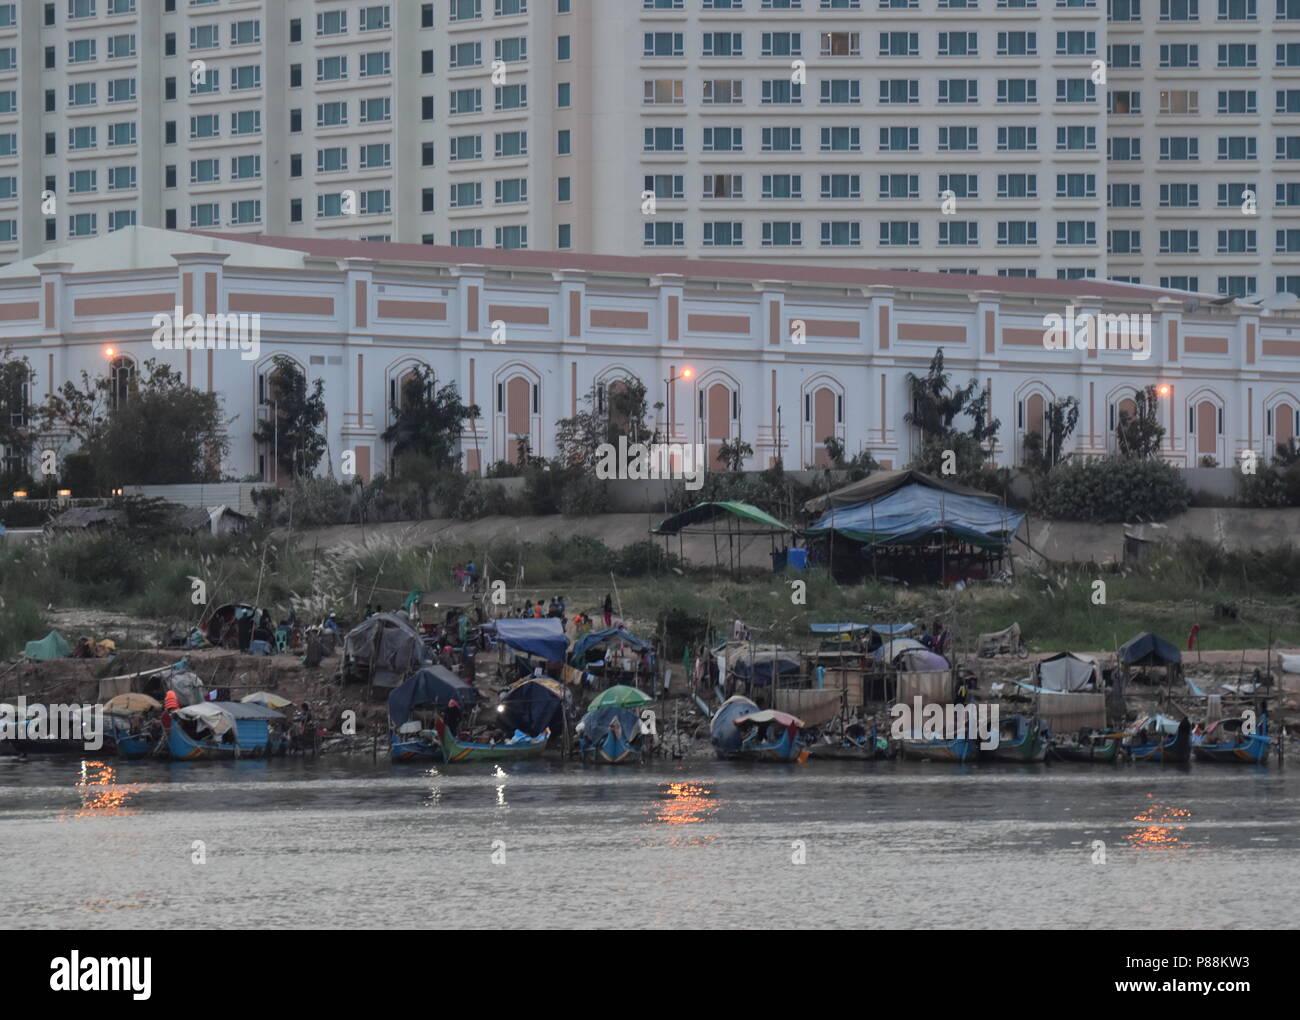 Il contrasto di hotel di lusso e barche da pesca e la povertà delle minoranze musulmane lungo il fiume Mekong in Phnom Penh Cambogia Foto Stock